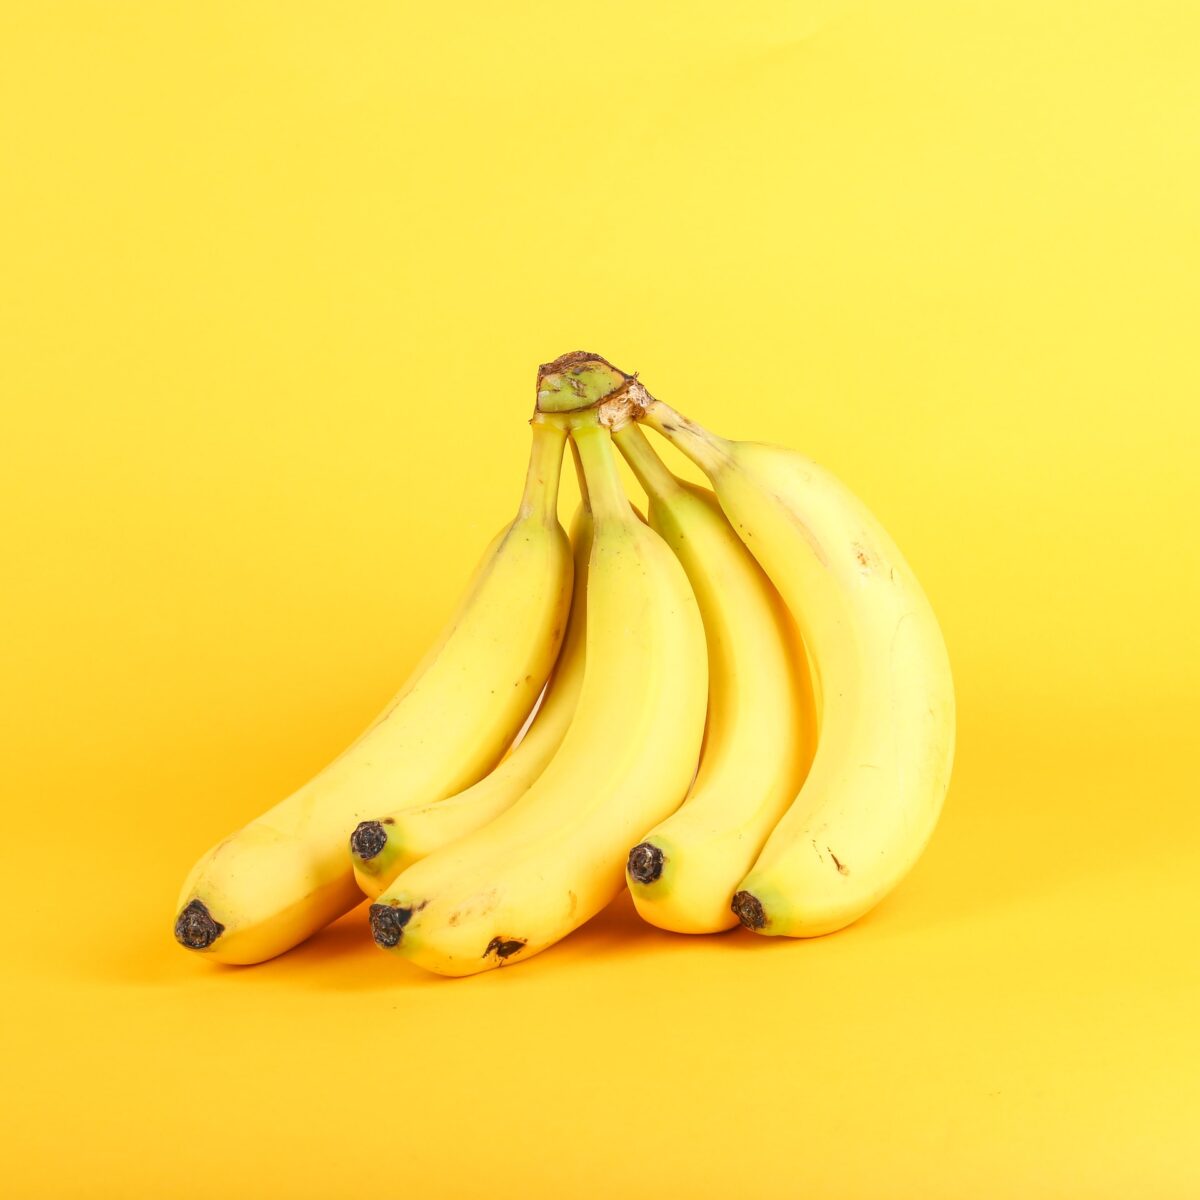 Πώς να αποθηκεύετε τις μπανάνες για να μην μαυρίζουν